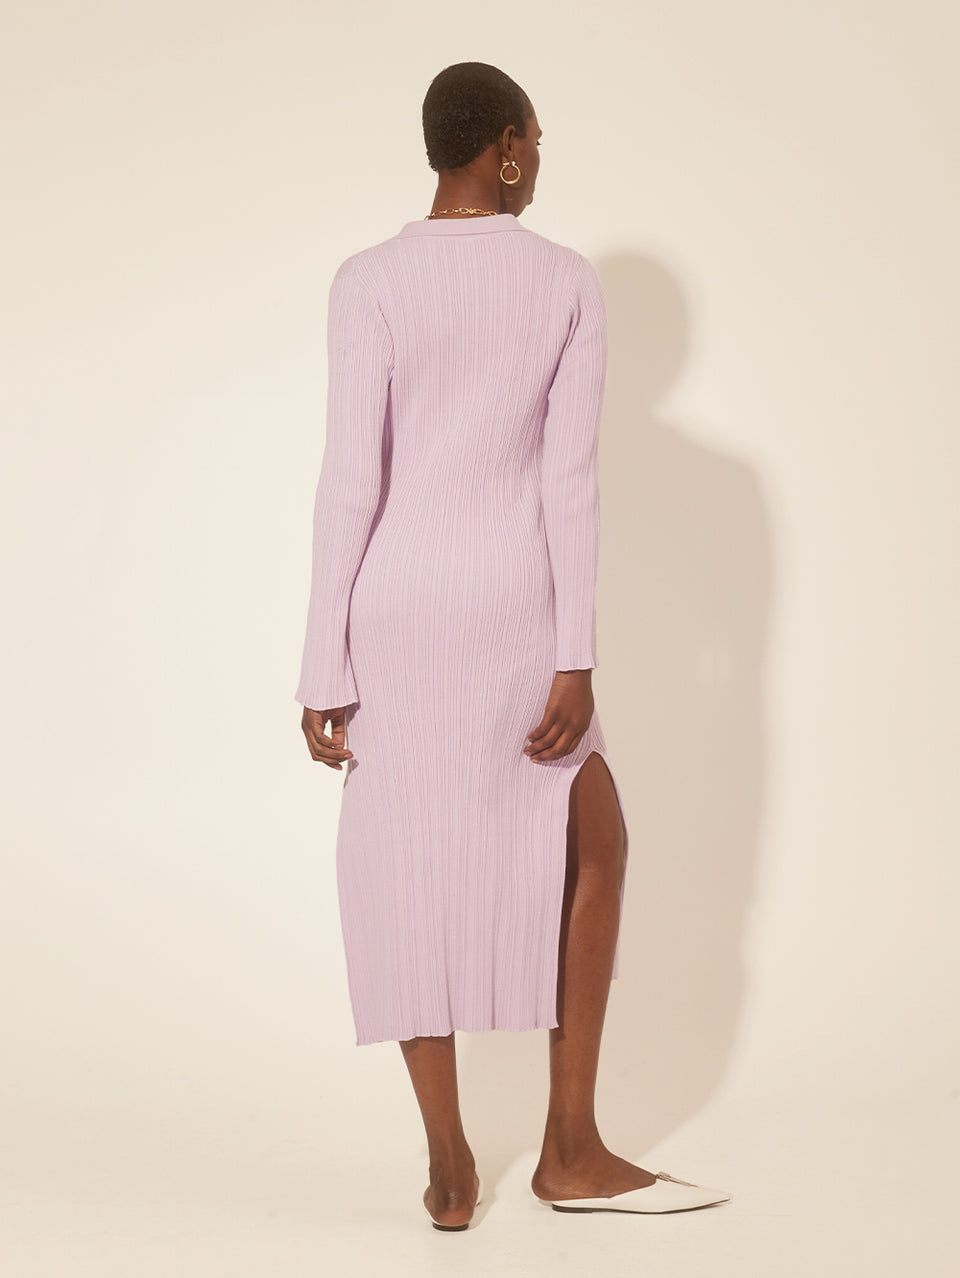 Alana Knit Dress Lilac KIVARI | Model wears a lilac knit midi dress back view